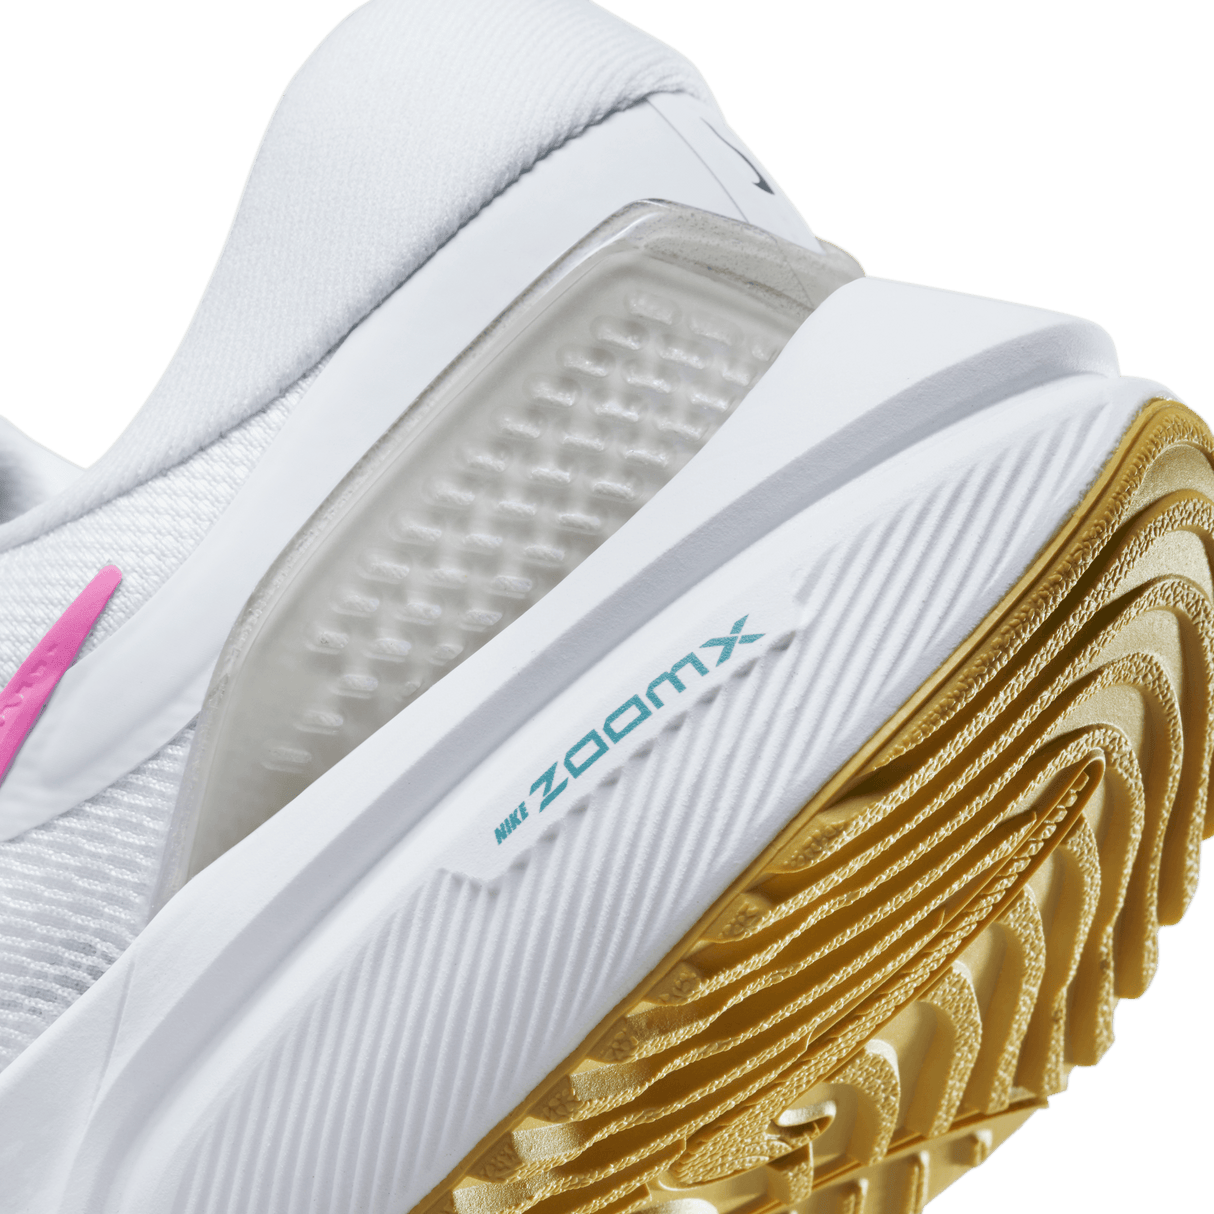 Nike Women's Air Zoom Vomero 16